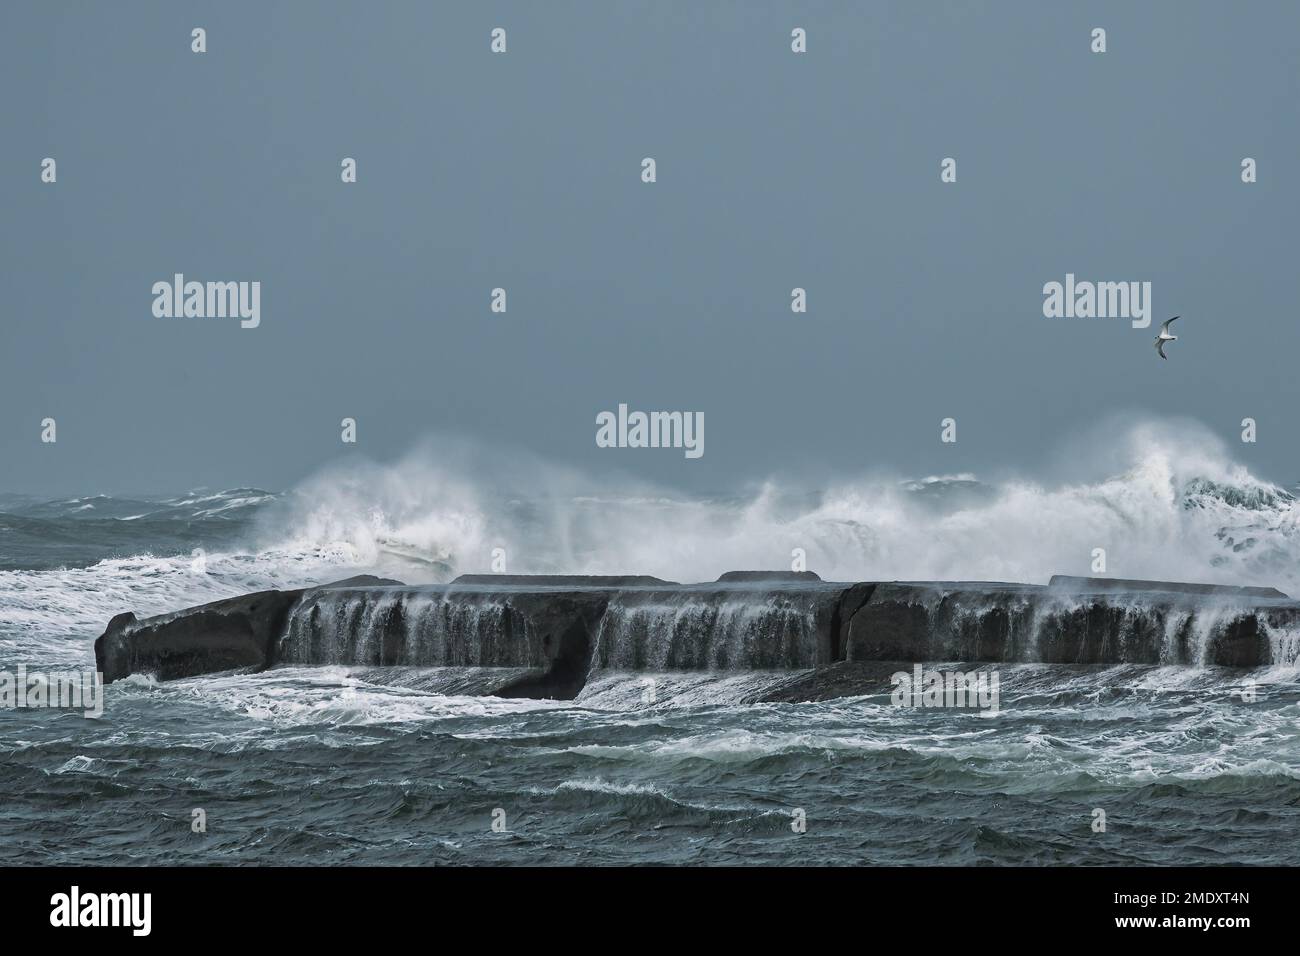 Sturmfluten erzeugen hohe Wellen, die auf einem Steg abstürzen Stockfoto